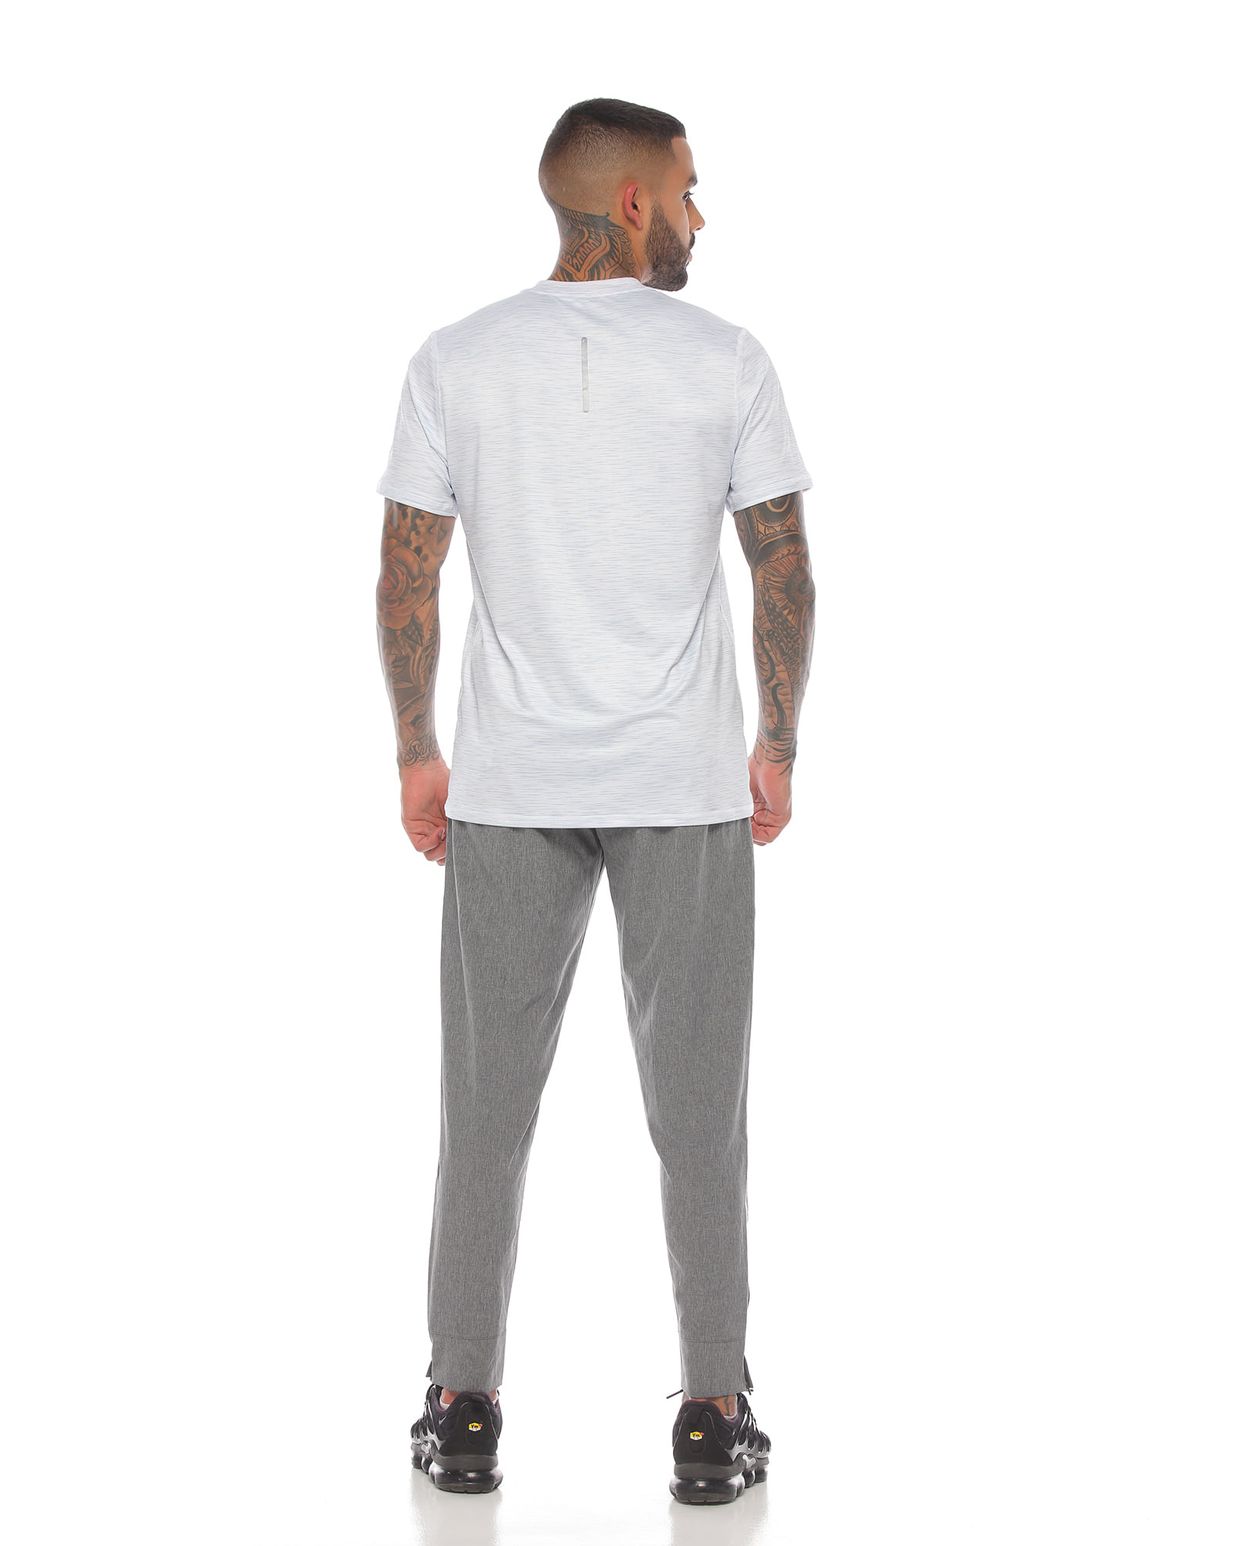 modelo con Camiseta Deportiva Manga Corta Blanca con pantalon deportivo para Hombre parte trasera